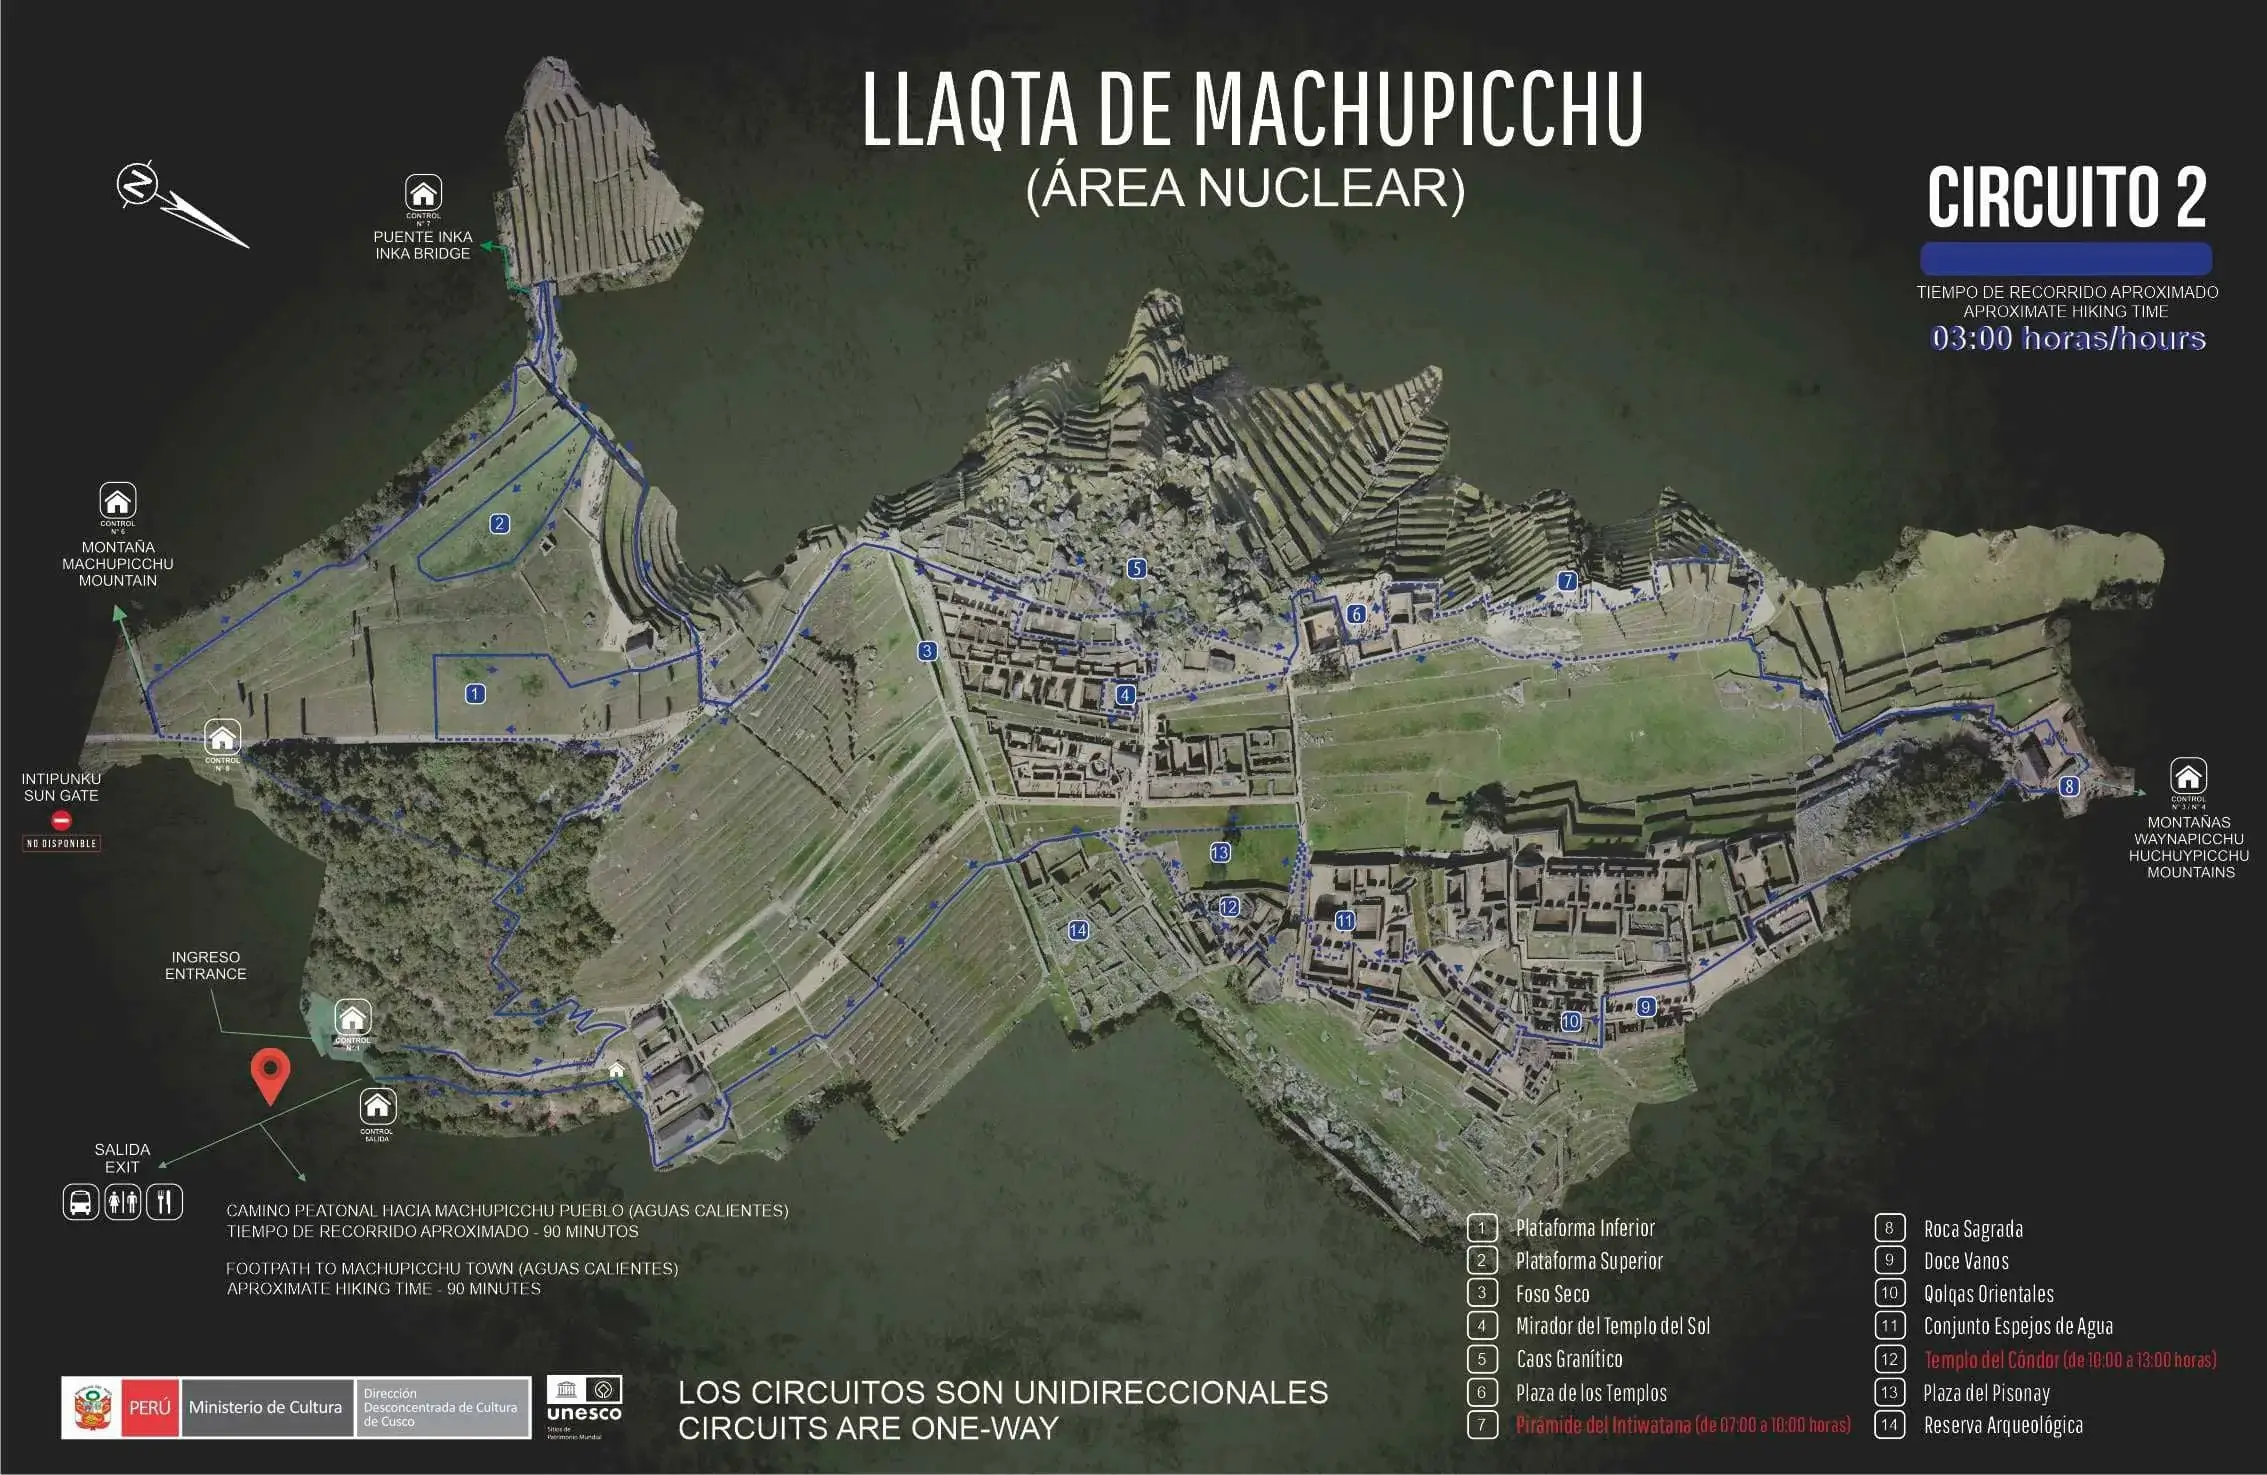 circuit 2 machu picchu - Inca Trail to Machu Picchu